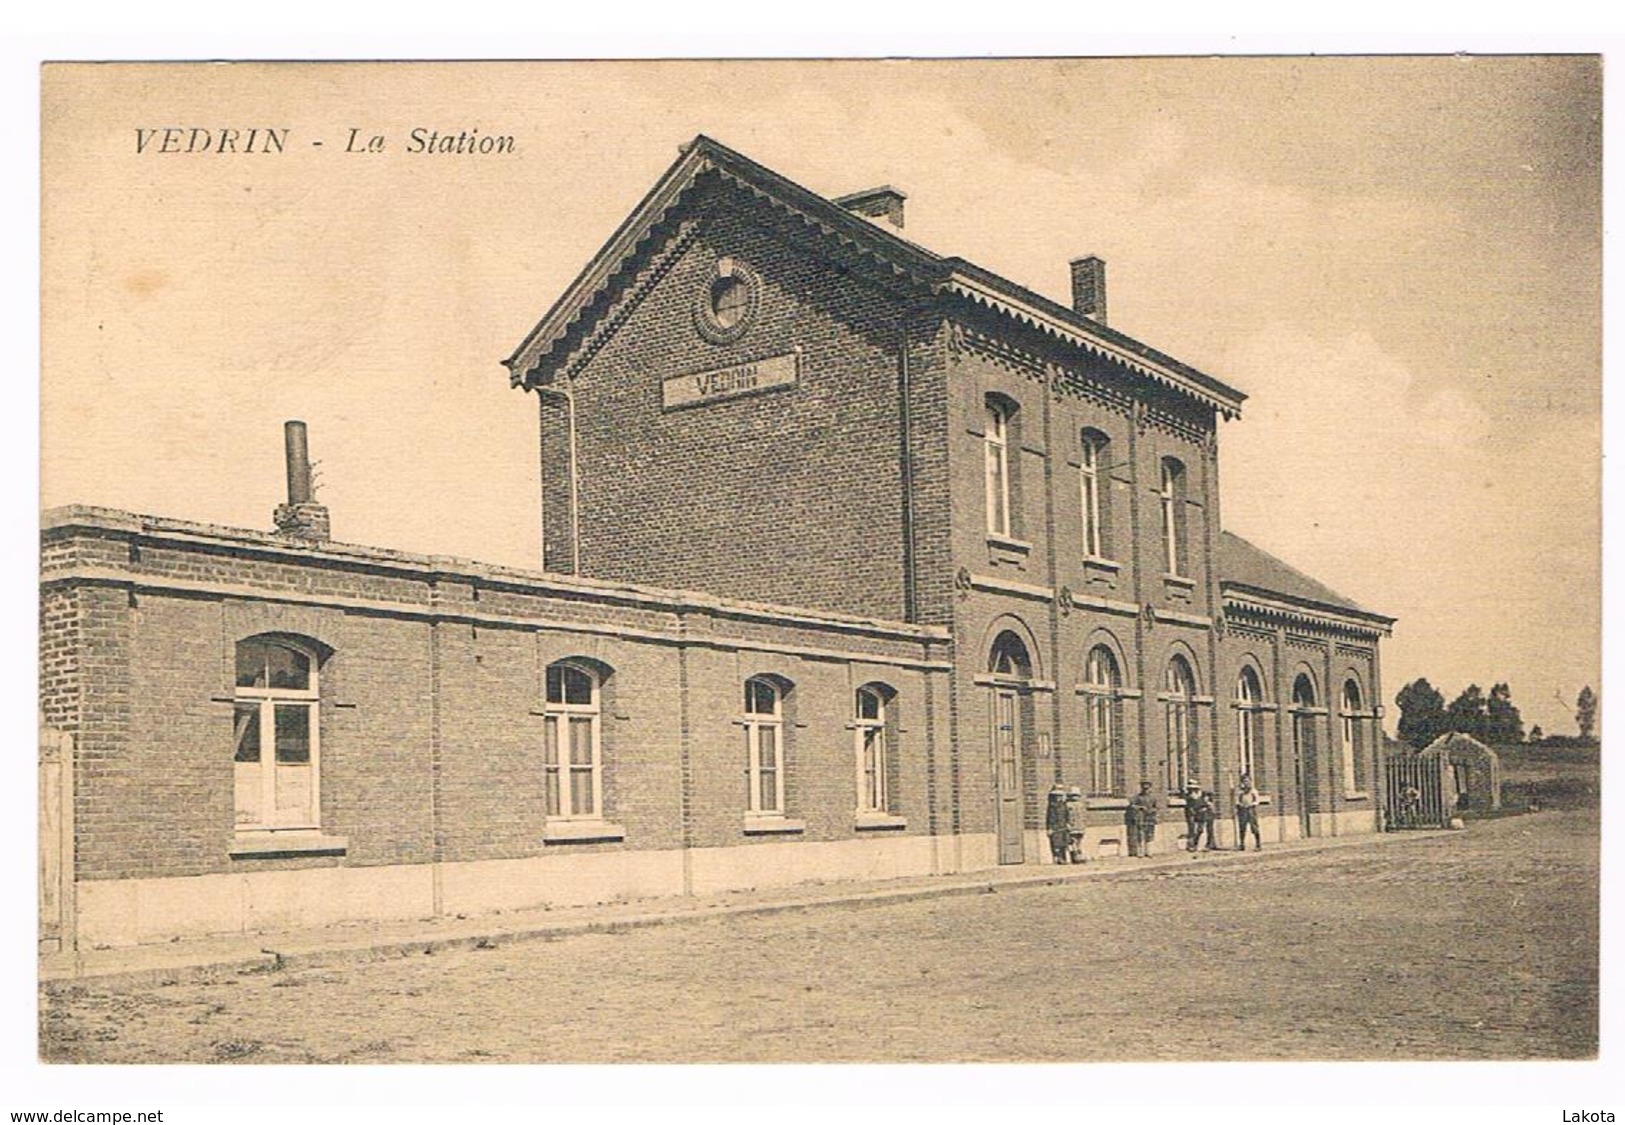 CPA NAMUR VEDRIN - La Station - Gare Chemin De Fer - Façade Et Quelques Personnes - Namur